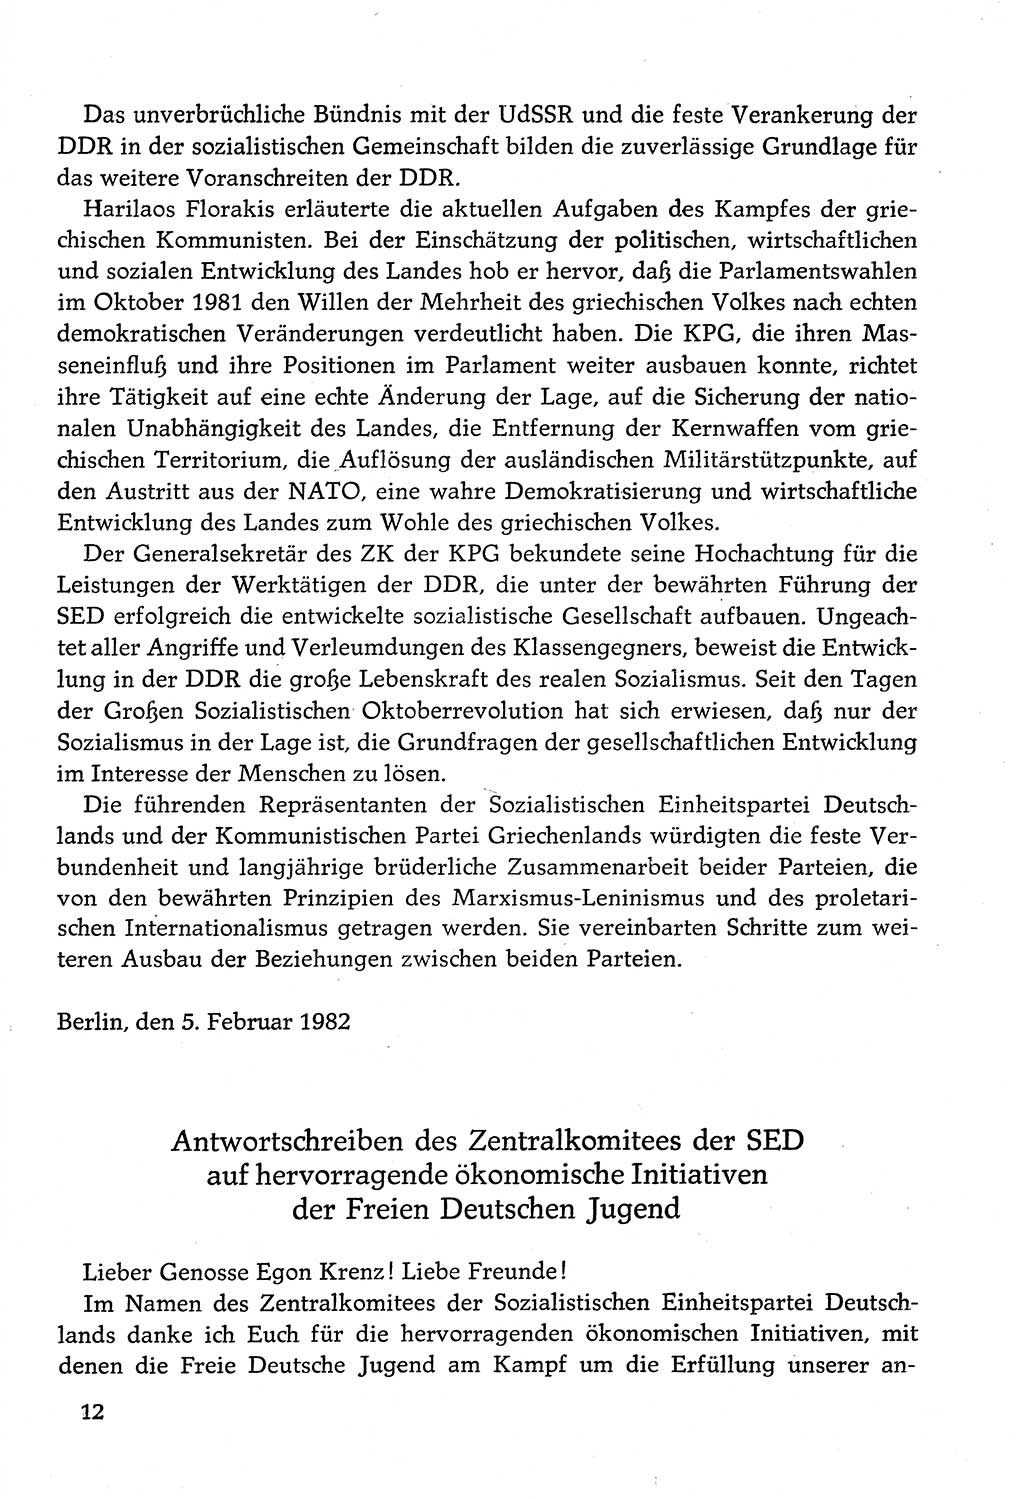 Dokumente der Sozialistischen Einheitspartei Deutschlands (SED) [Deutsche Demokratische Republik (DDR)] 1982-1983, Seite 12 (Dok. SED DDR 1982-1983, S. 12)